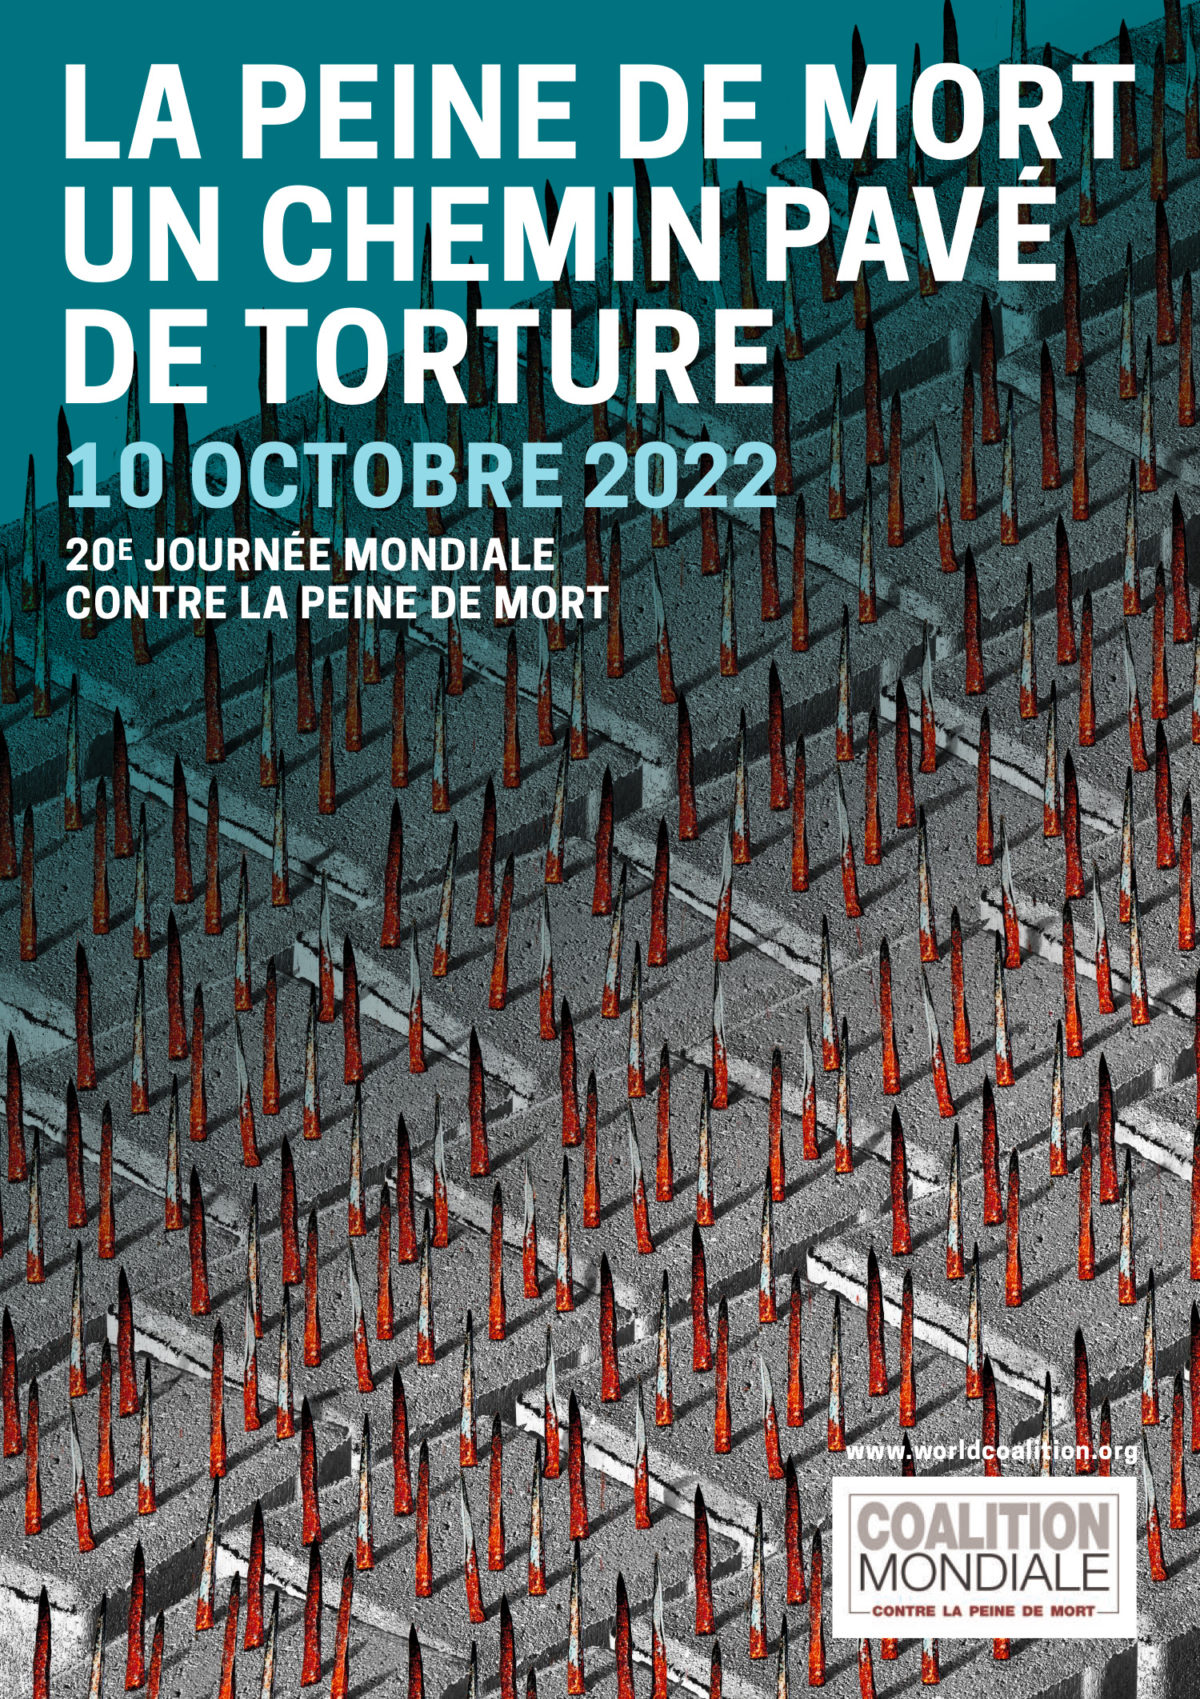 20ème Journée mondiale contre la peine de mort : La peine de mort : un chemin pavé de torture